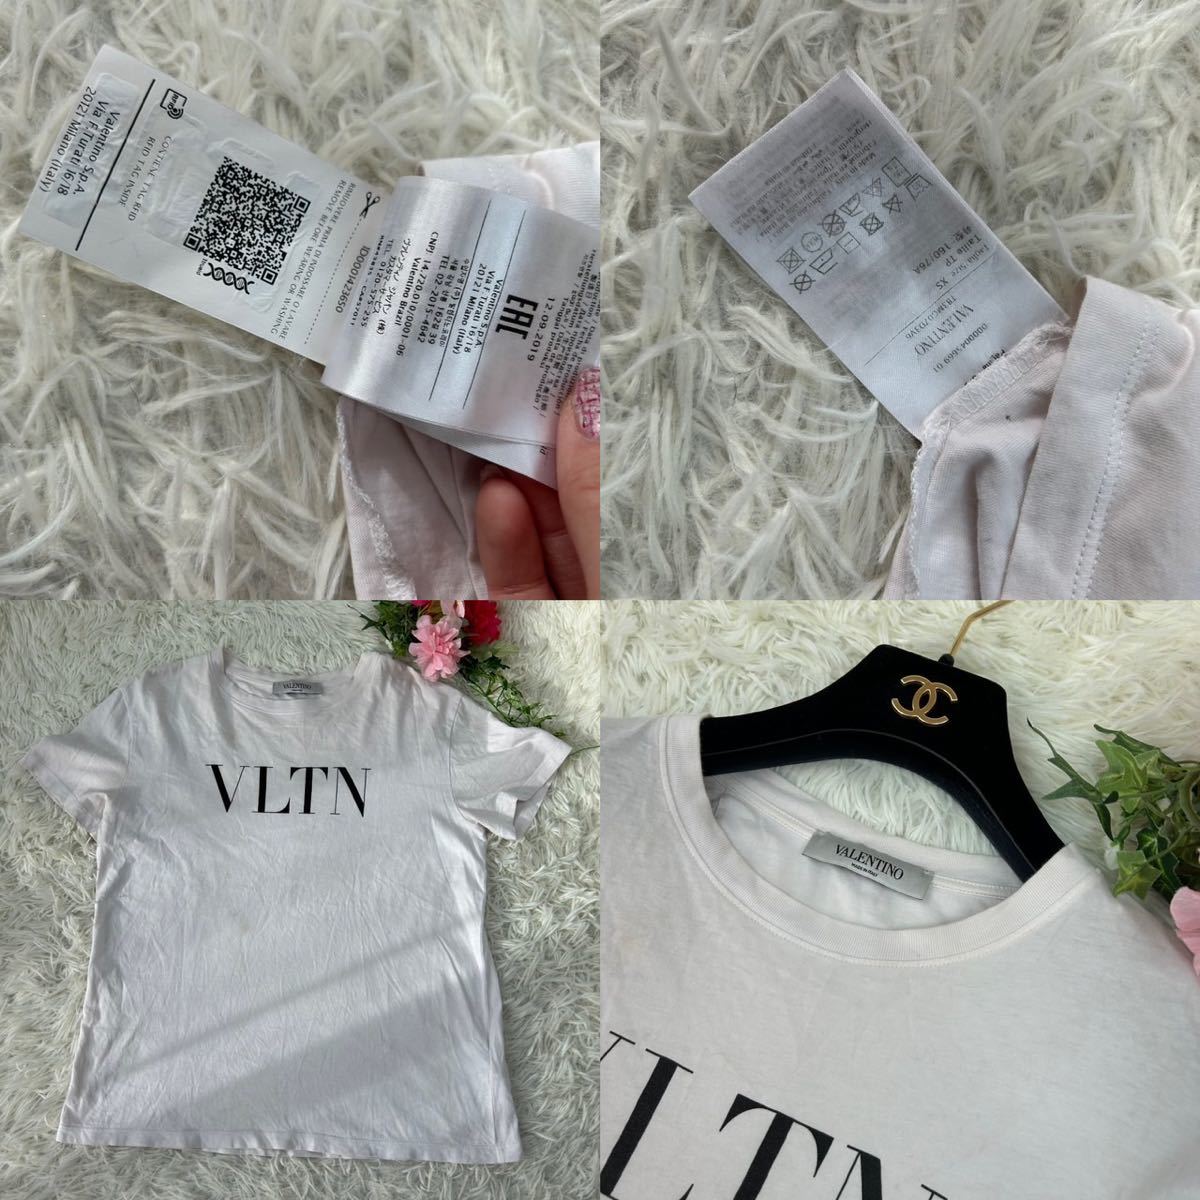 VALENTINO ヴァレンティノ メンズ XSサイズ 白 ホワイト 半袖 Tシャツ カットソー ロゴ入り かっこいい 人気モデル 送料無料_画像10